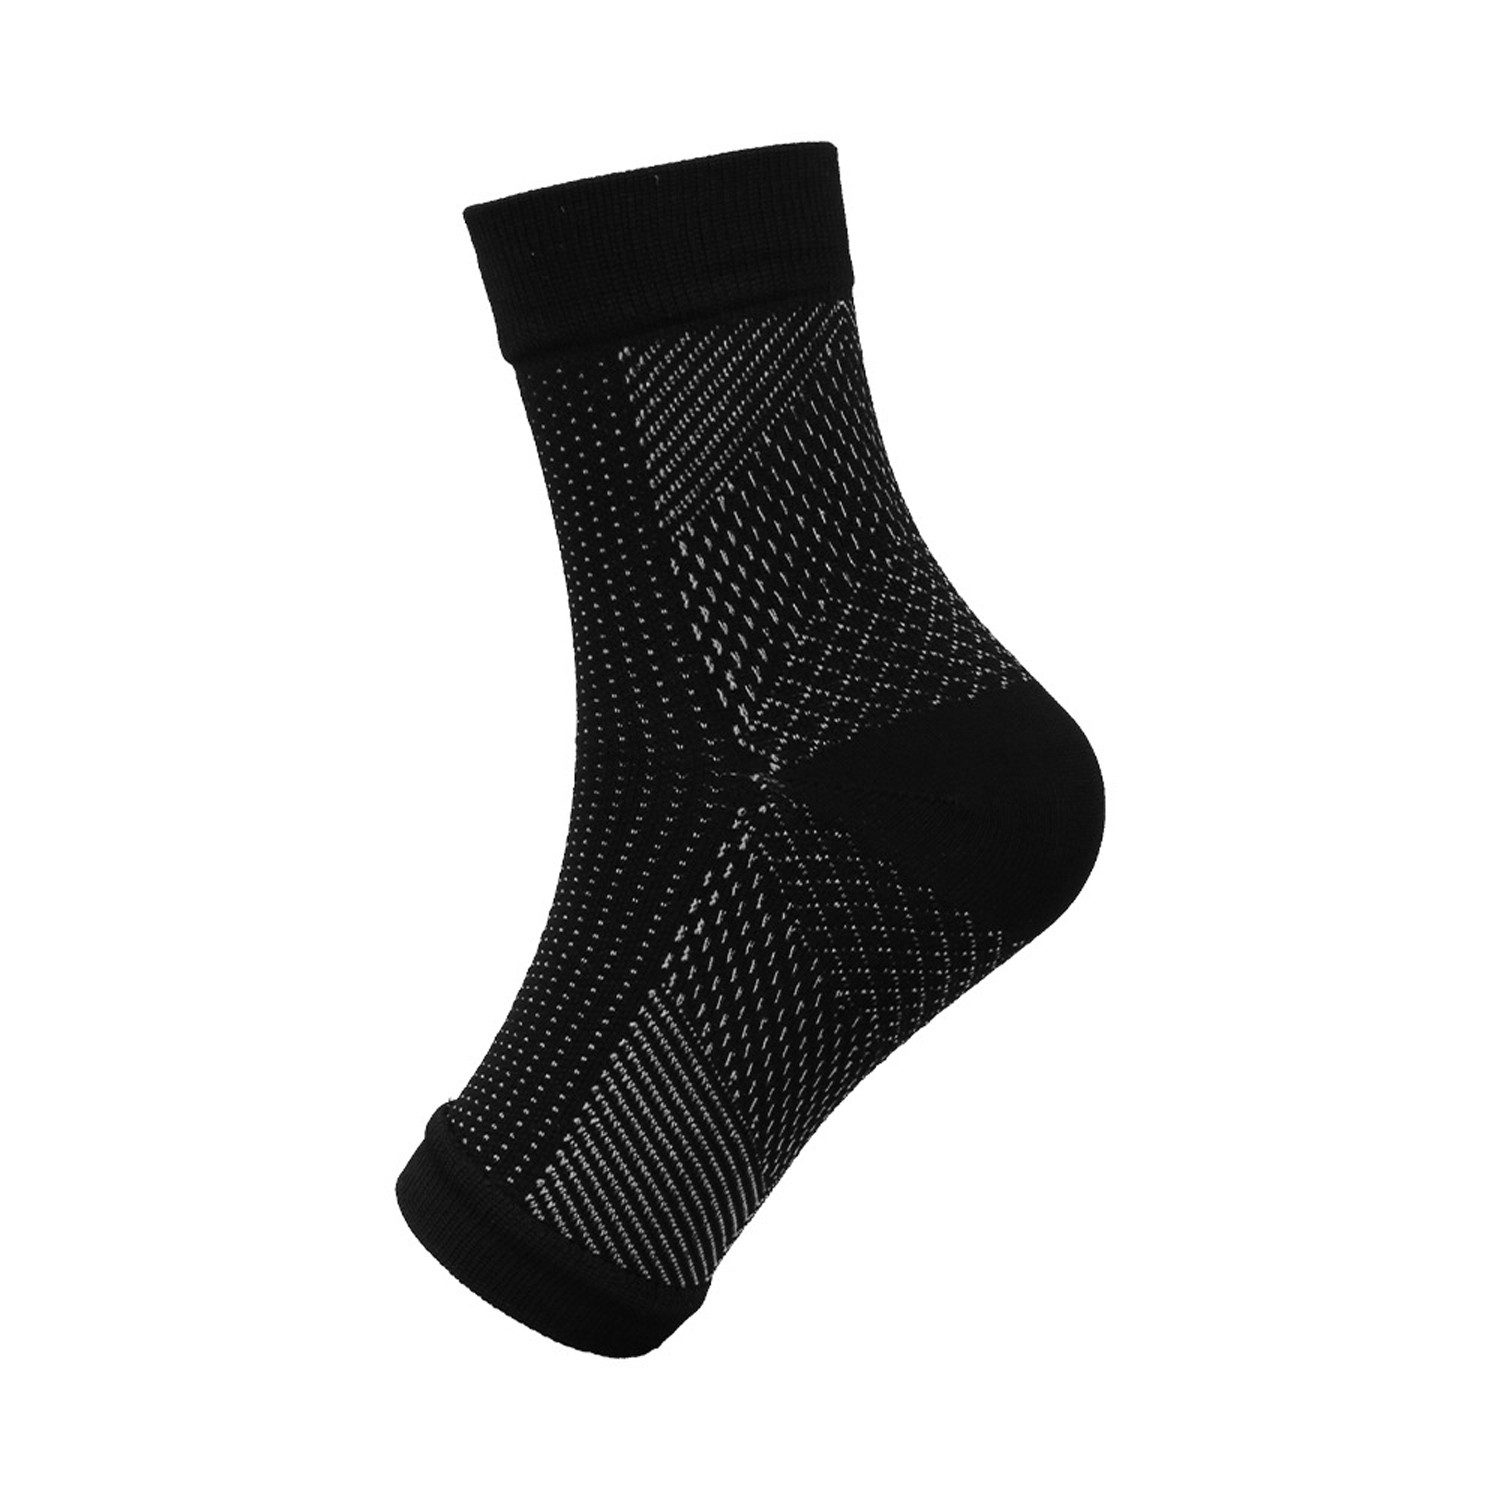 KIKI Socken 2 Paar orthopädische Kompressionsstrümpfe zur Knöchelunterstützung (2-Paar)